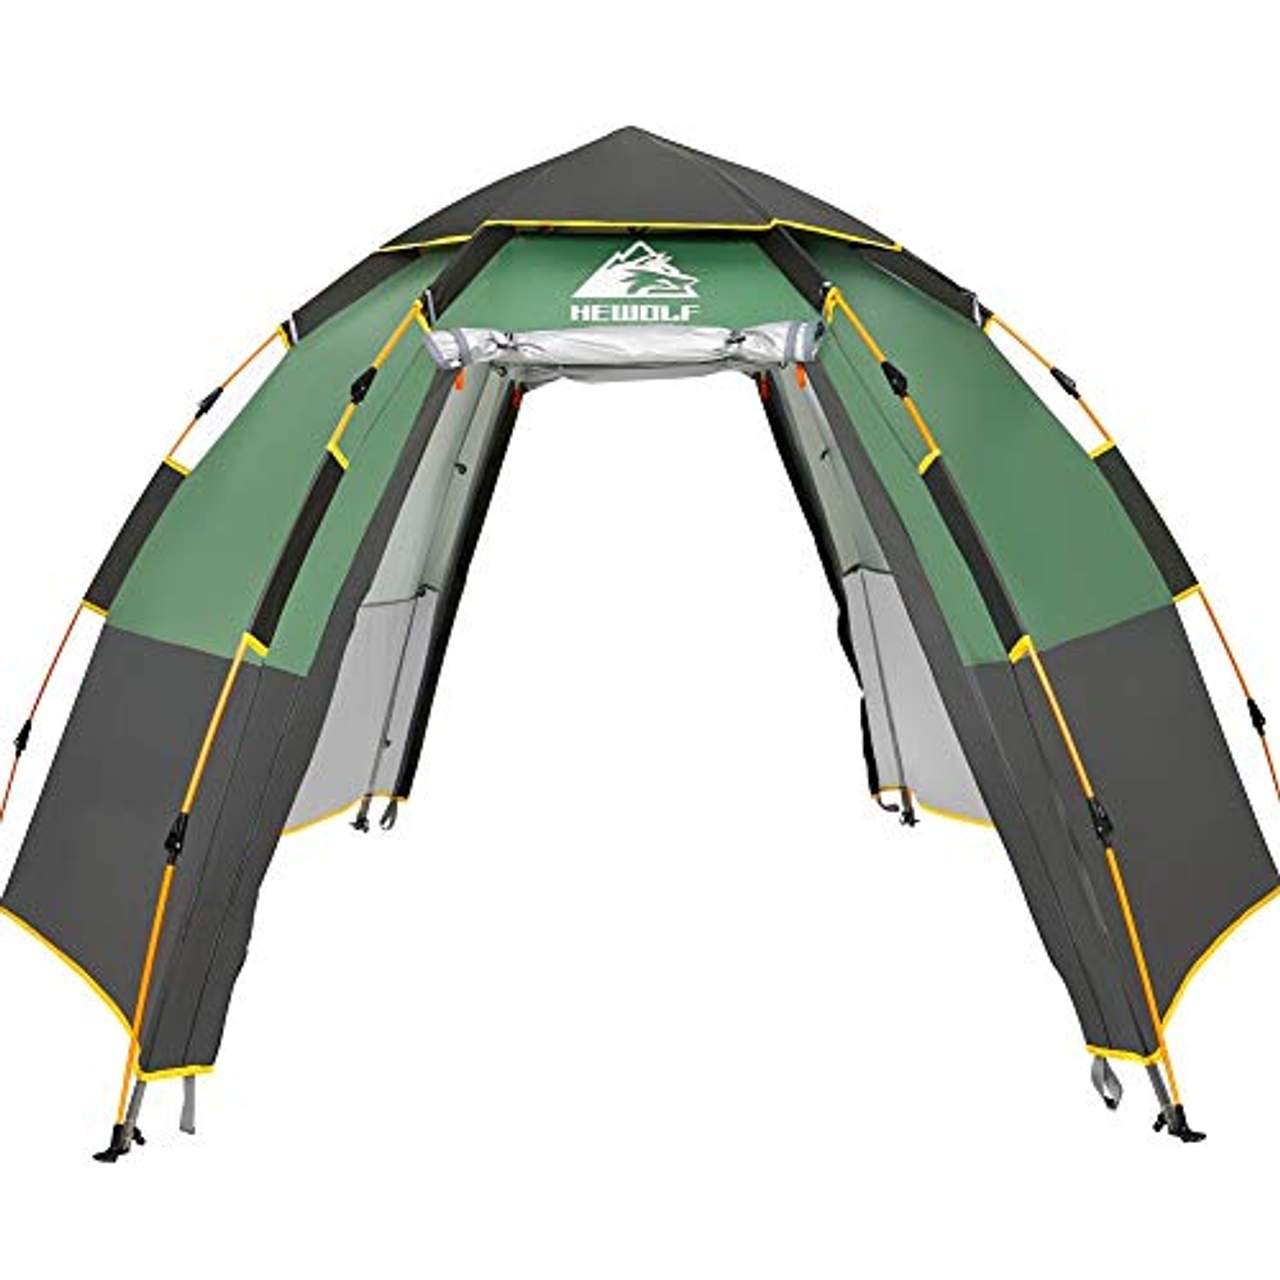 HEWOLF Kuppelzelt 3-4 Personen Campingzelt Wasserdicht Pop Up Zelt UV-Schutz